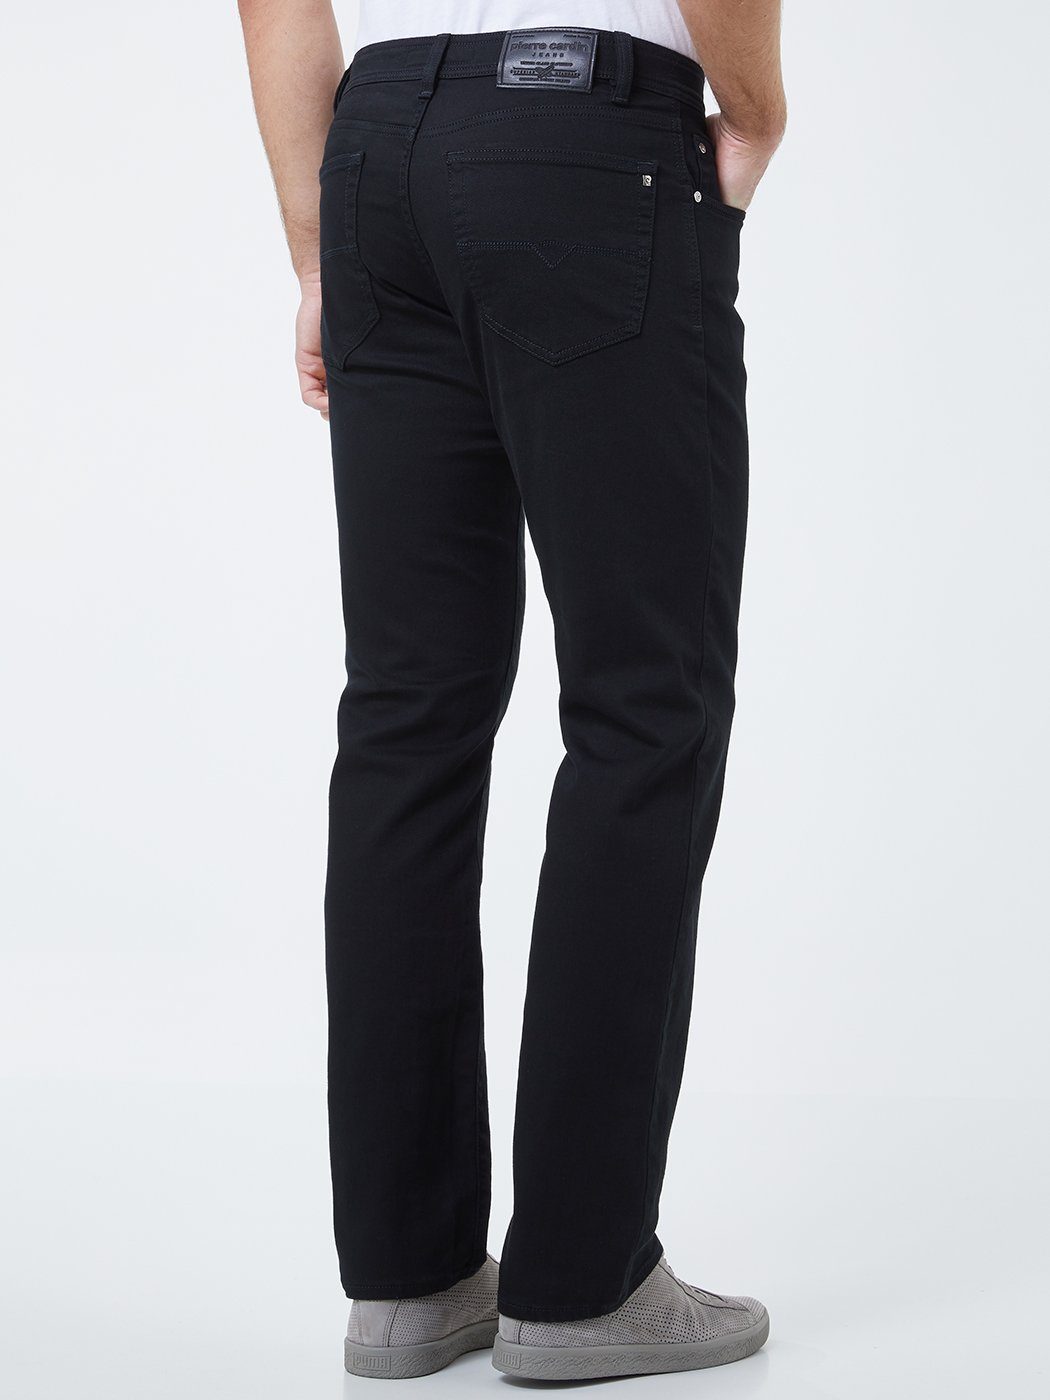 Pierre Cardin 5-Pocket-Jeans »PIERRE CARDIN DIJON black star 3880 122.05  Konfekt« online kaufen | OTTO